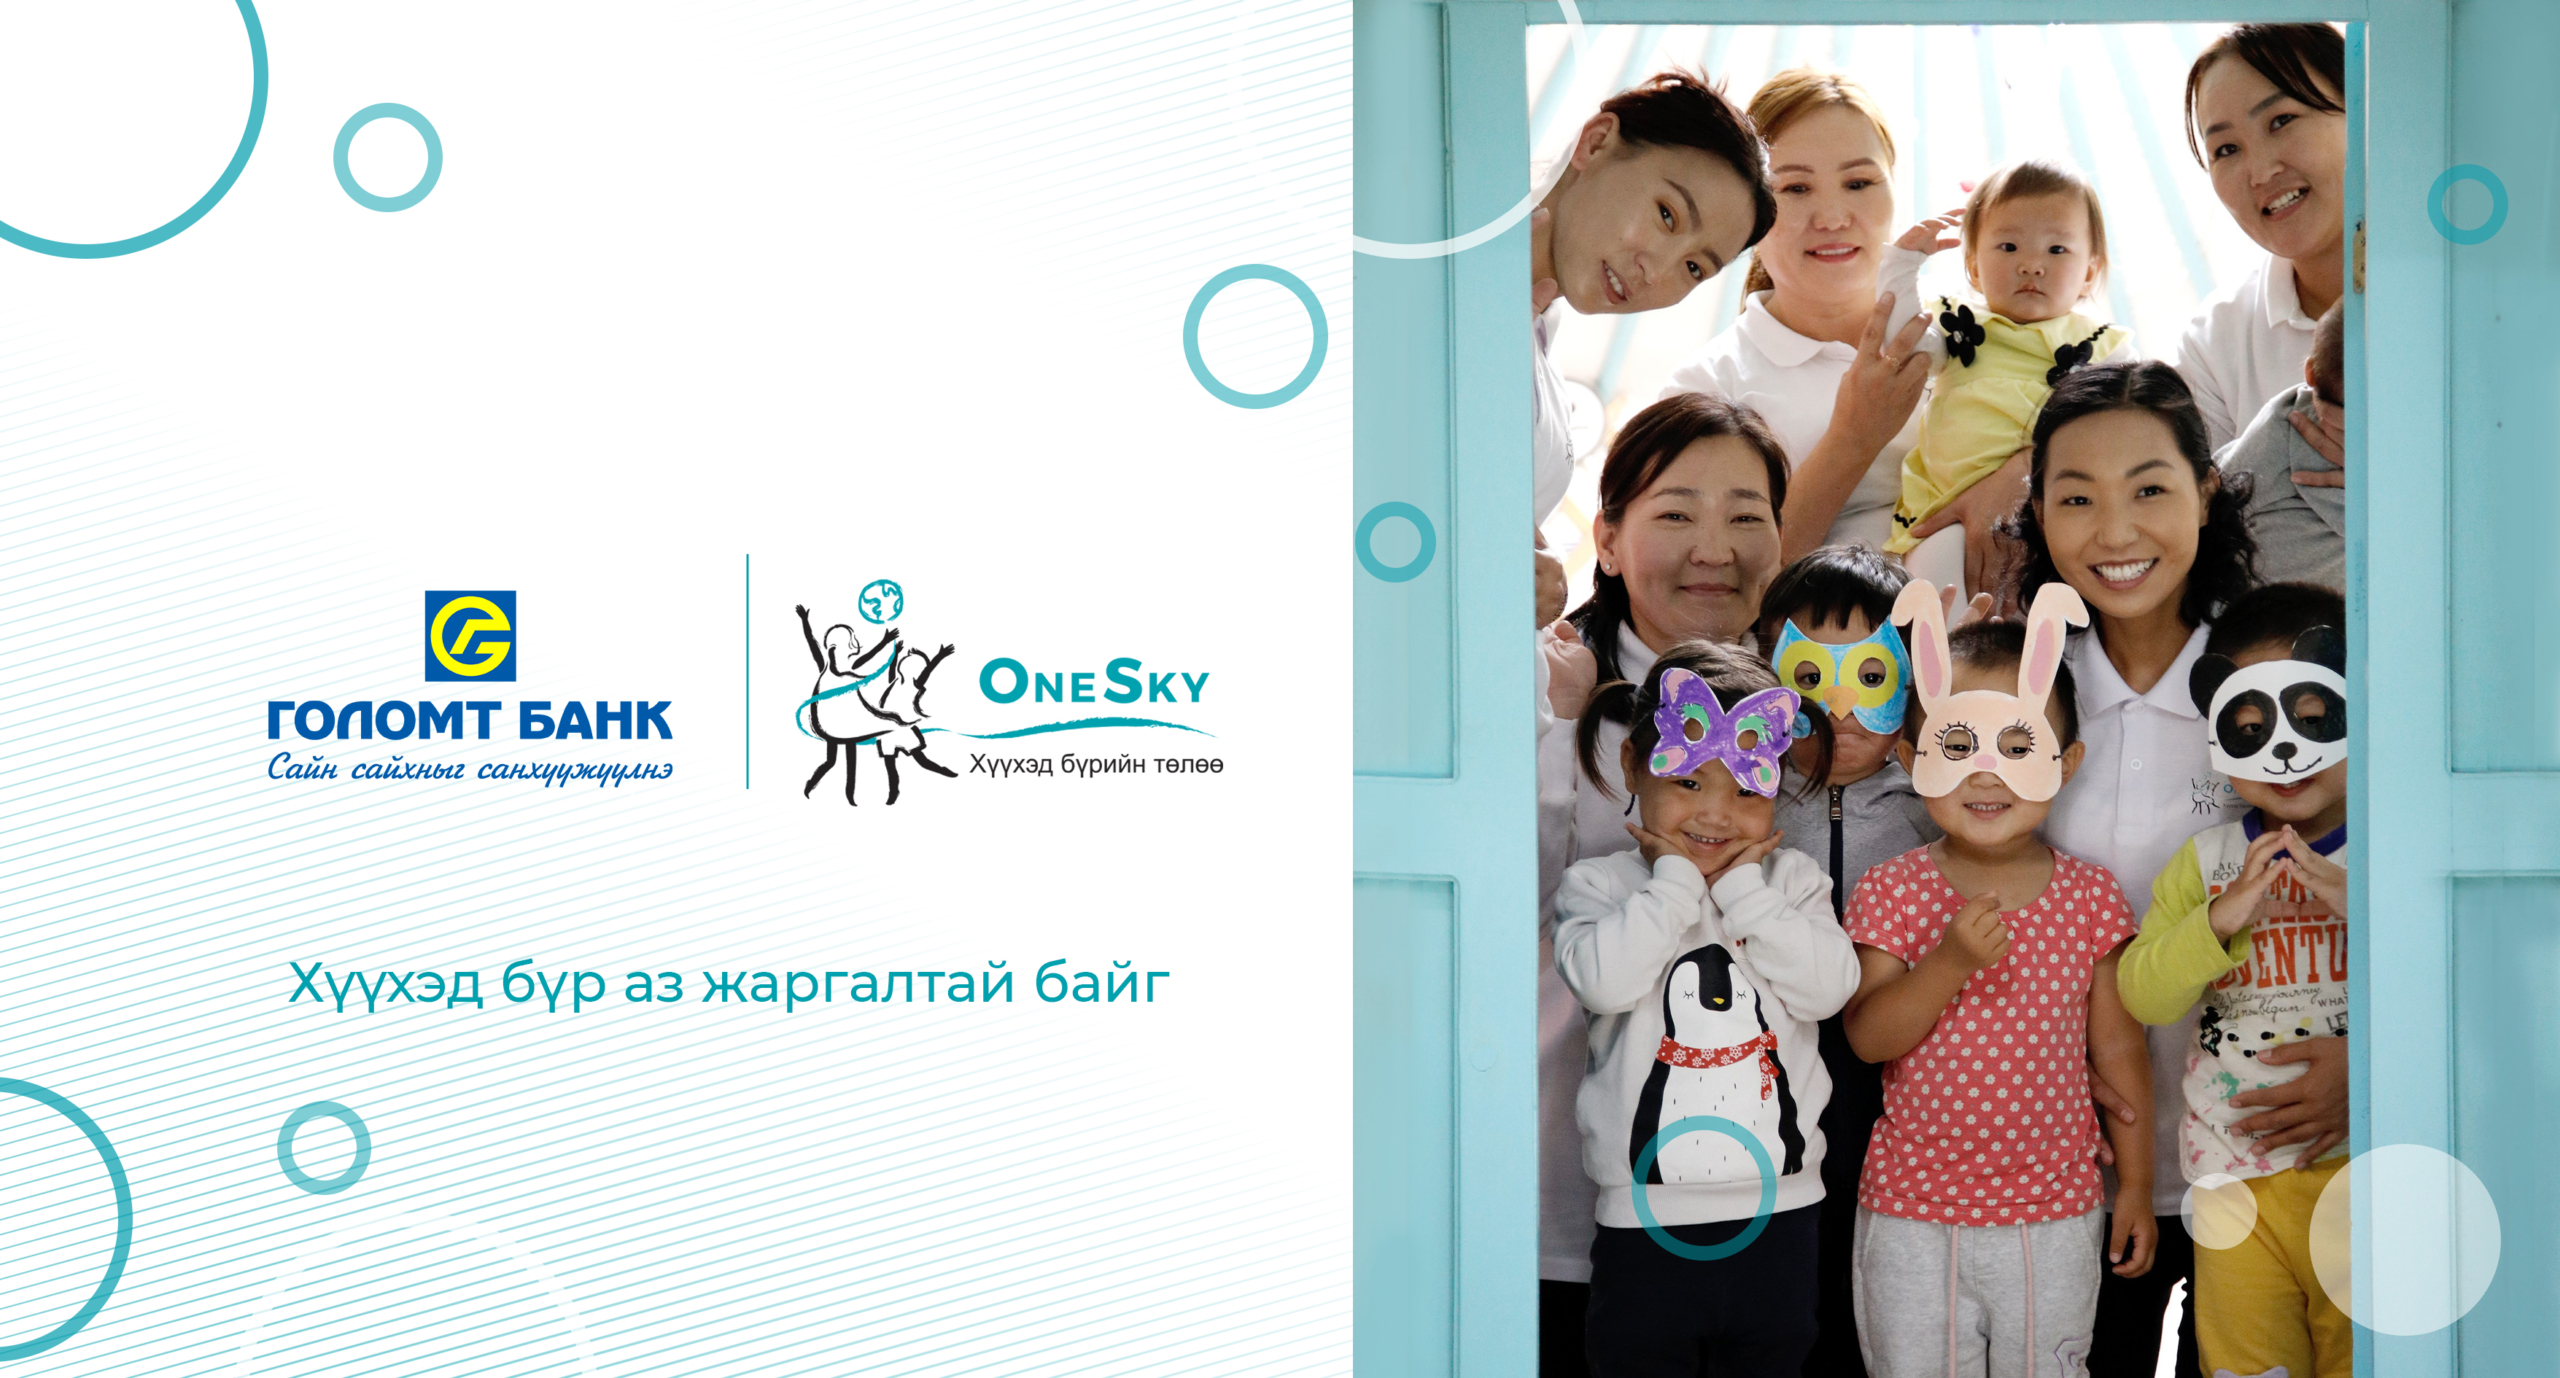 Голомт банк “OneSky” хүүхэд хөгжлийн байгууллагад дэмжлэг үзүүлж хамтран ажиллана